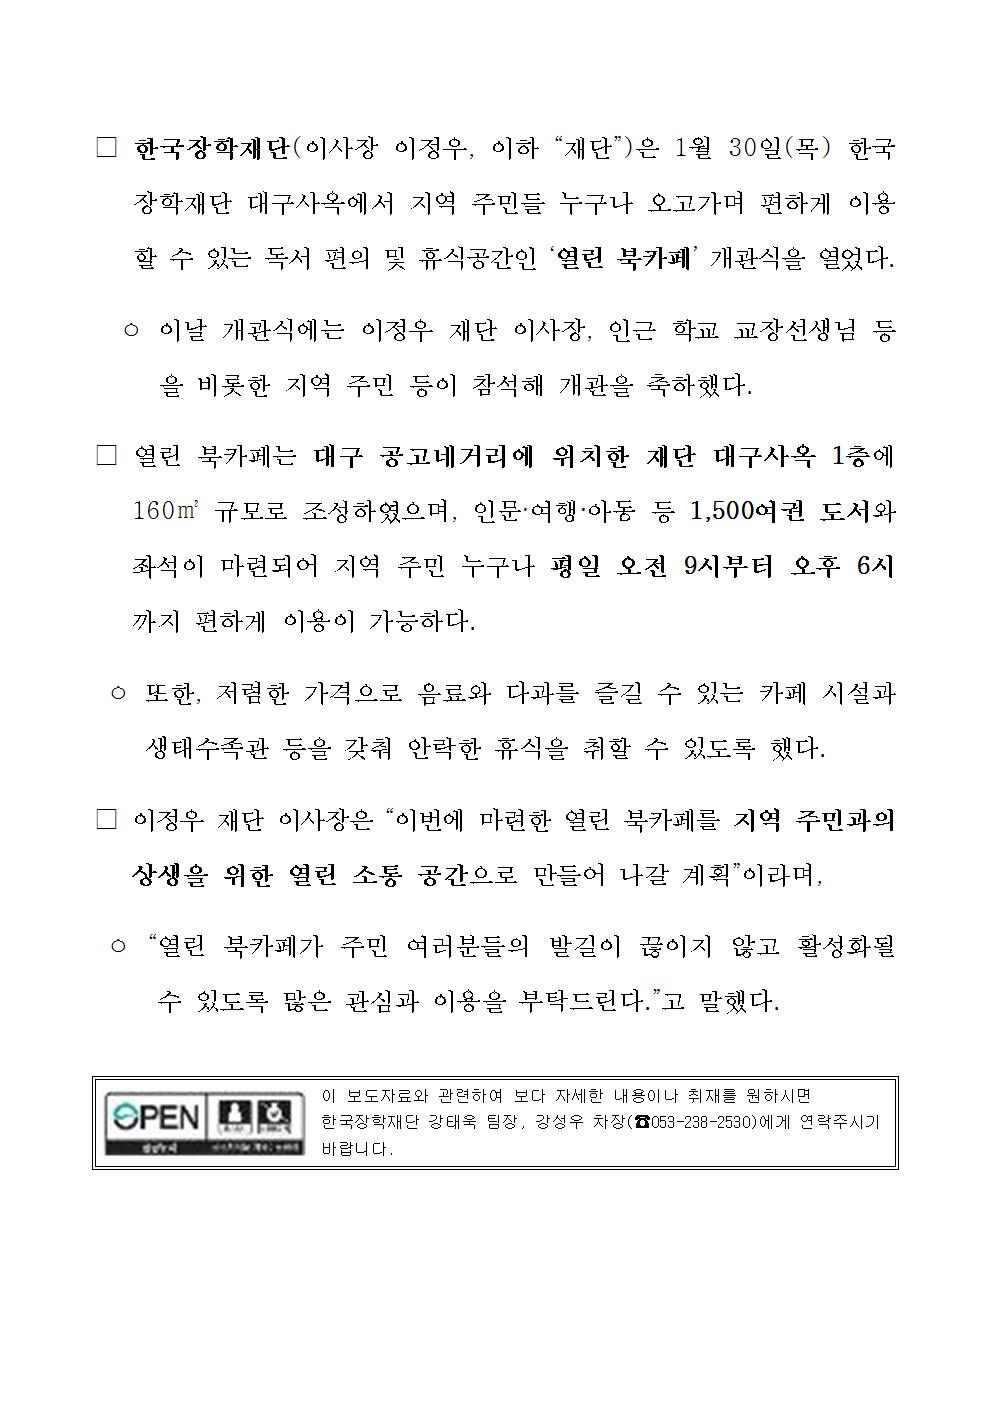 01-30(목)[보도자료] 한국장학재단 열린북카페 개소식 개최002.jpg